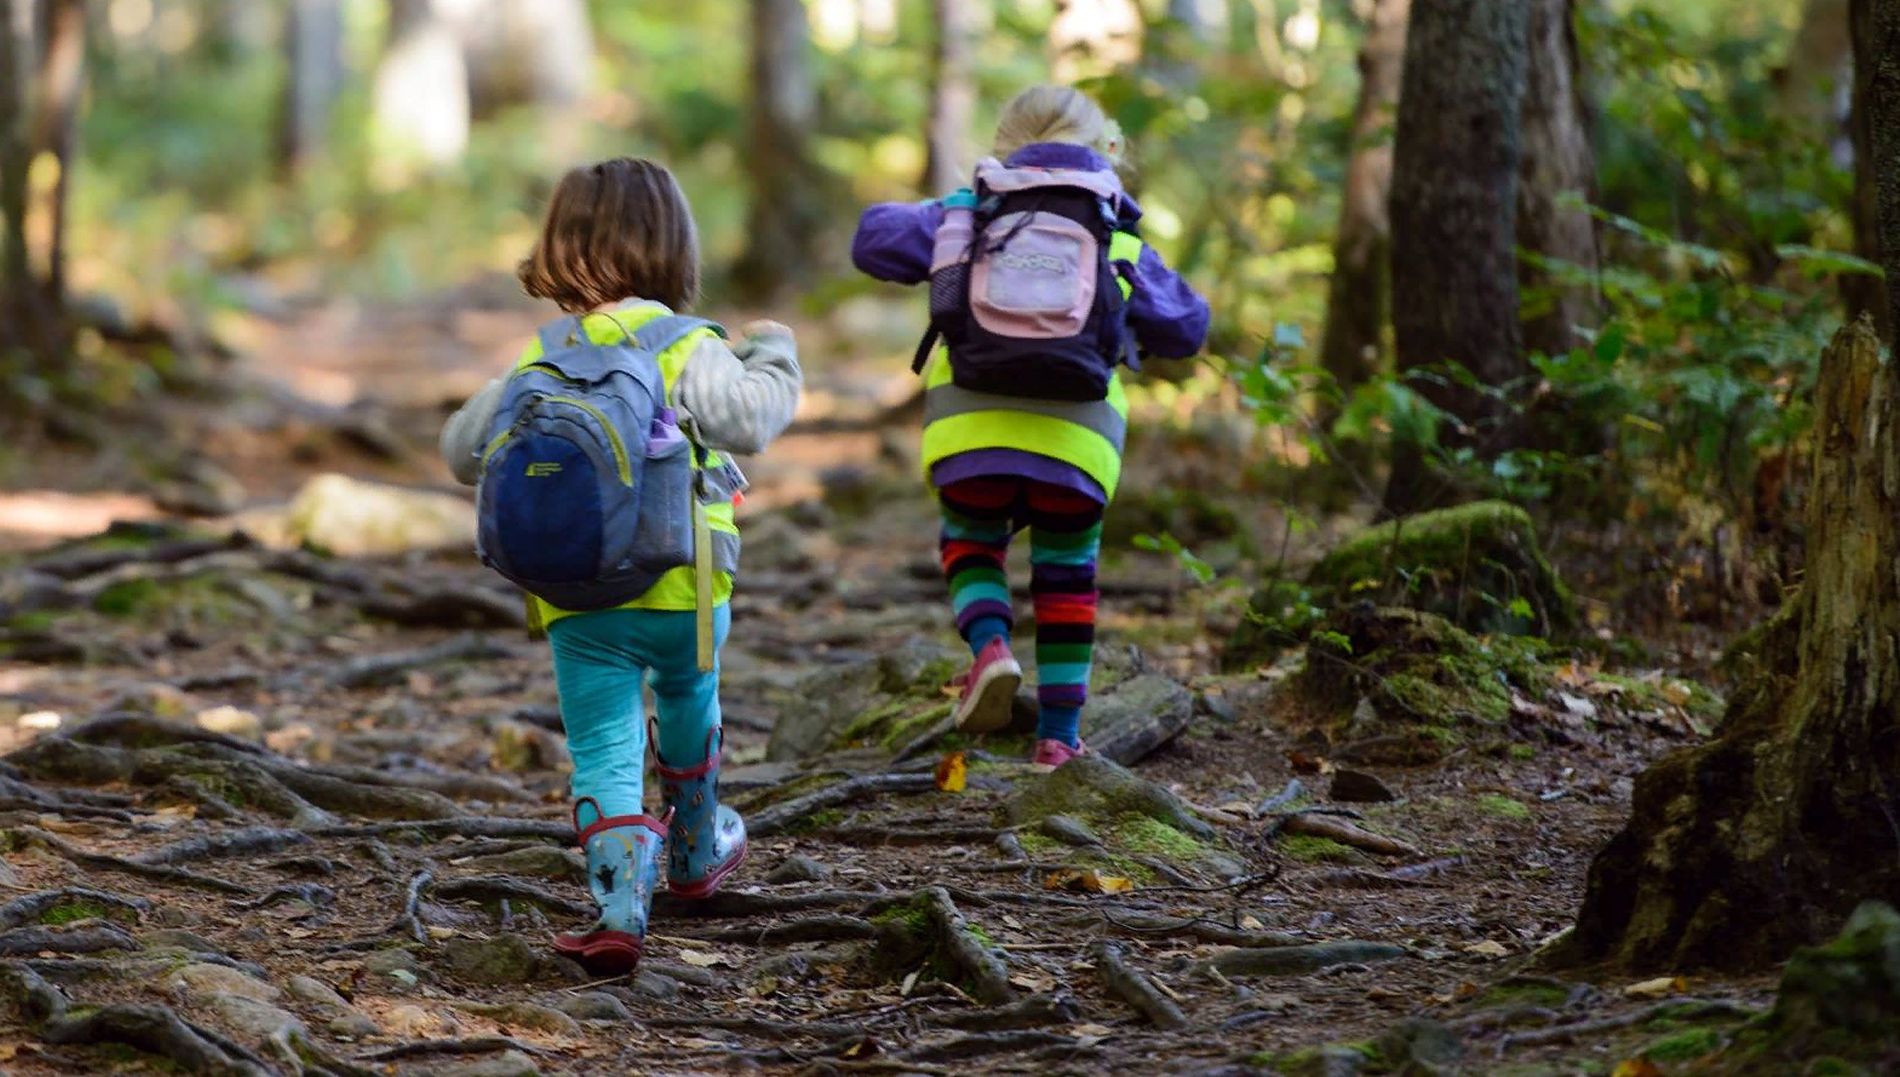 Впр гуляя в лесу попадаешь. Прогулка в лесу. Прогулки в лесу с детьми. Малыши. В лесу. Прогулка в лесу летом с детьми.